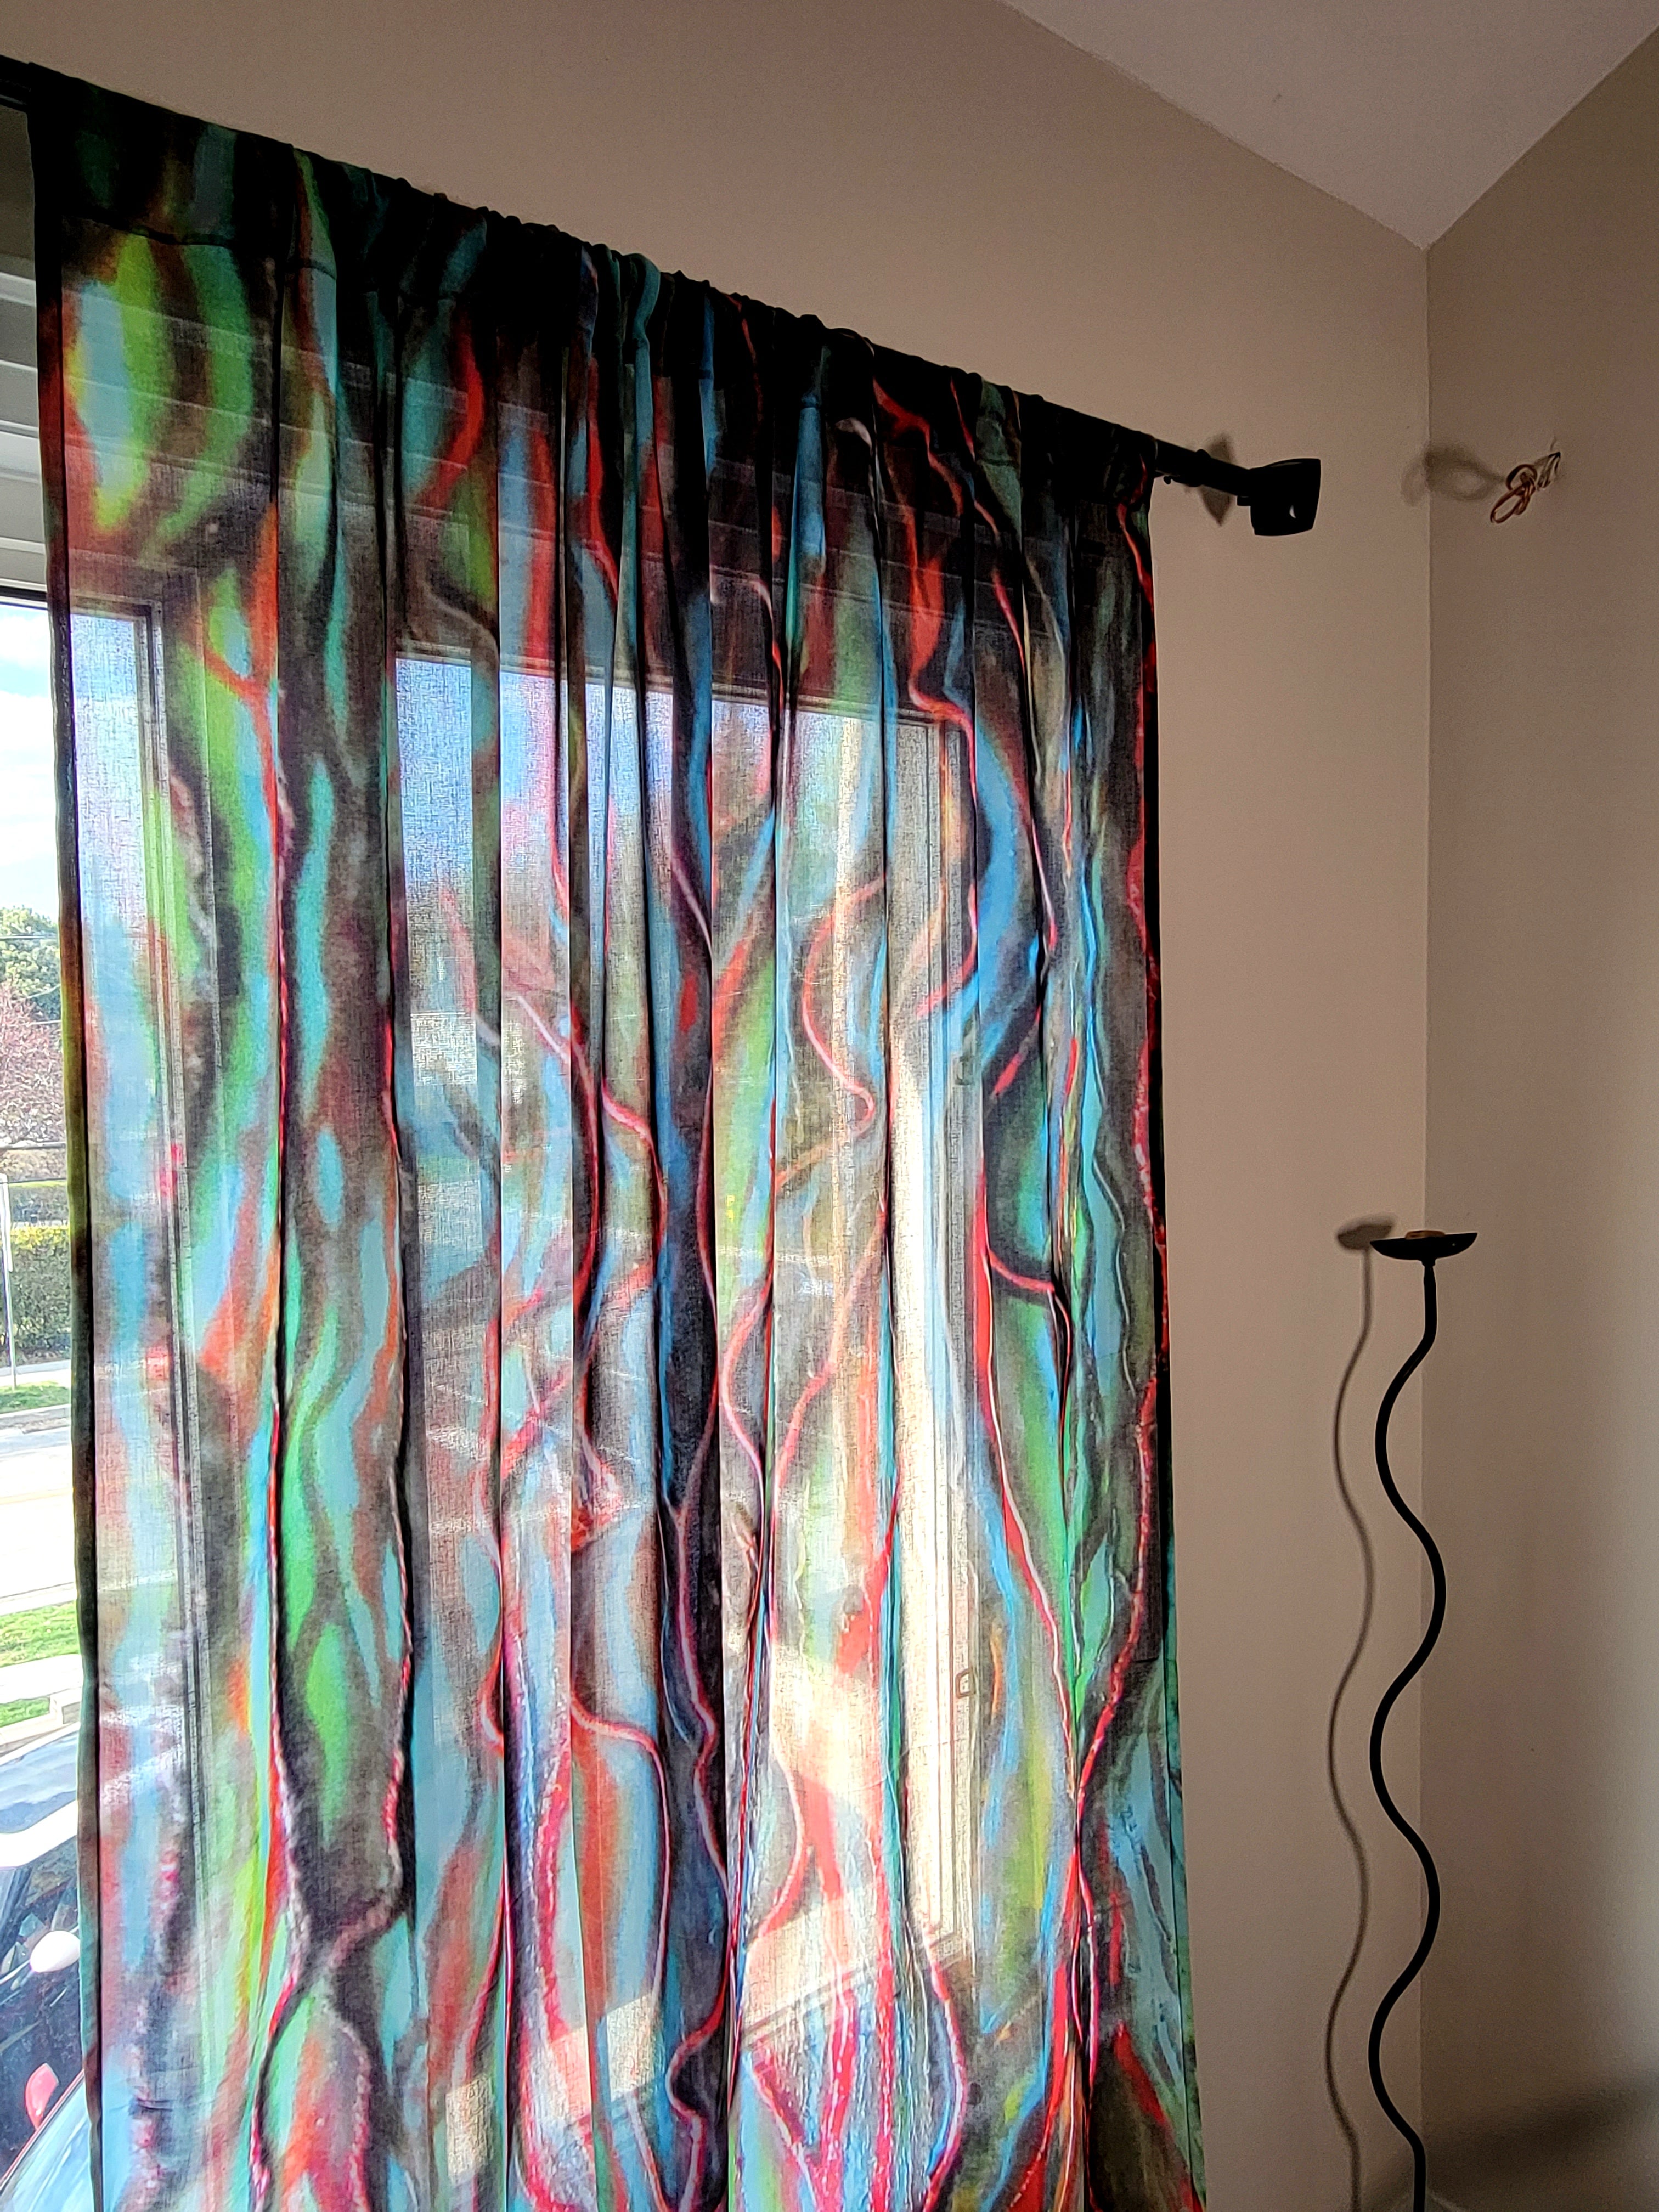 Curtain / Veins of Banyan